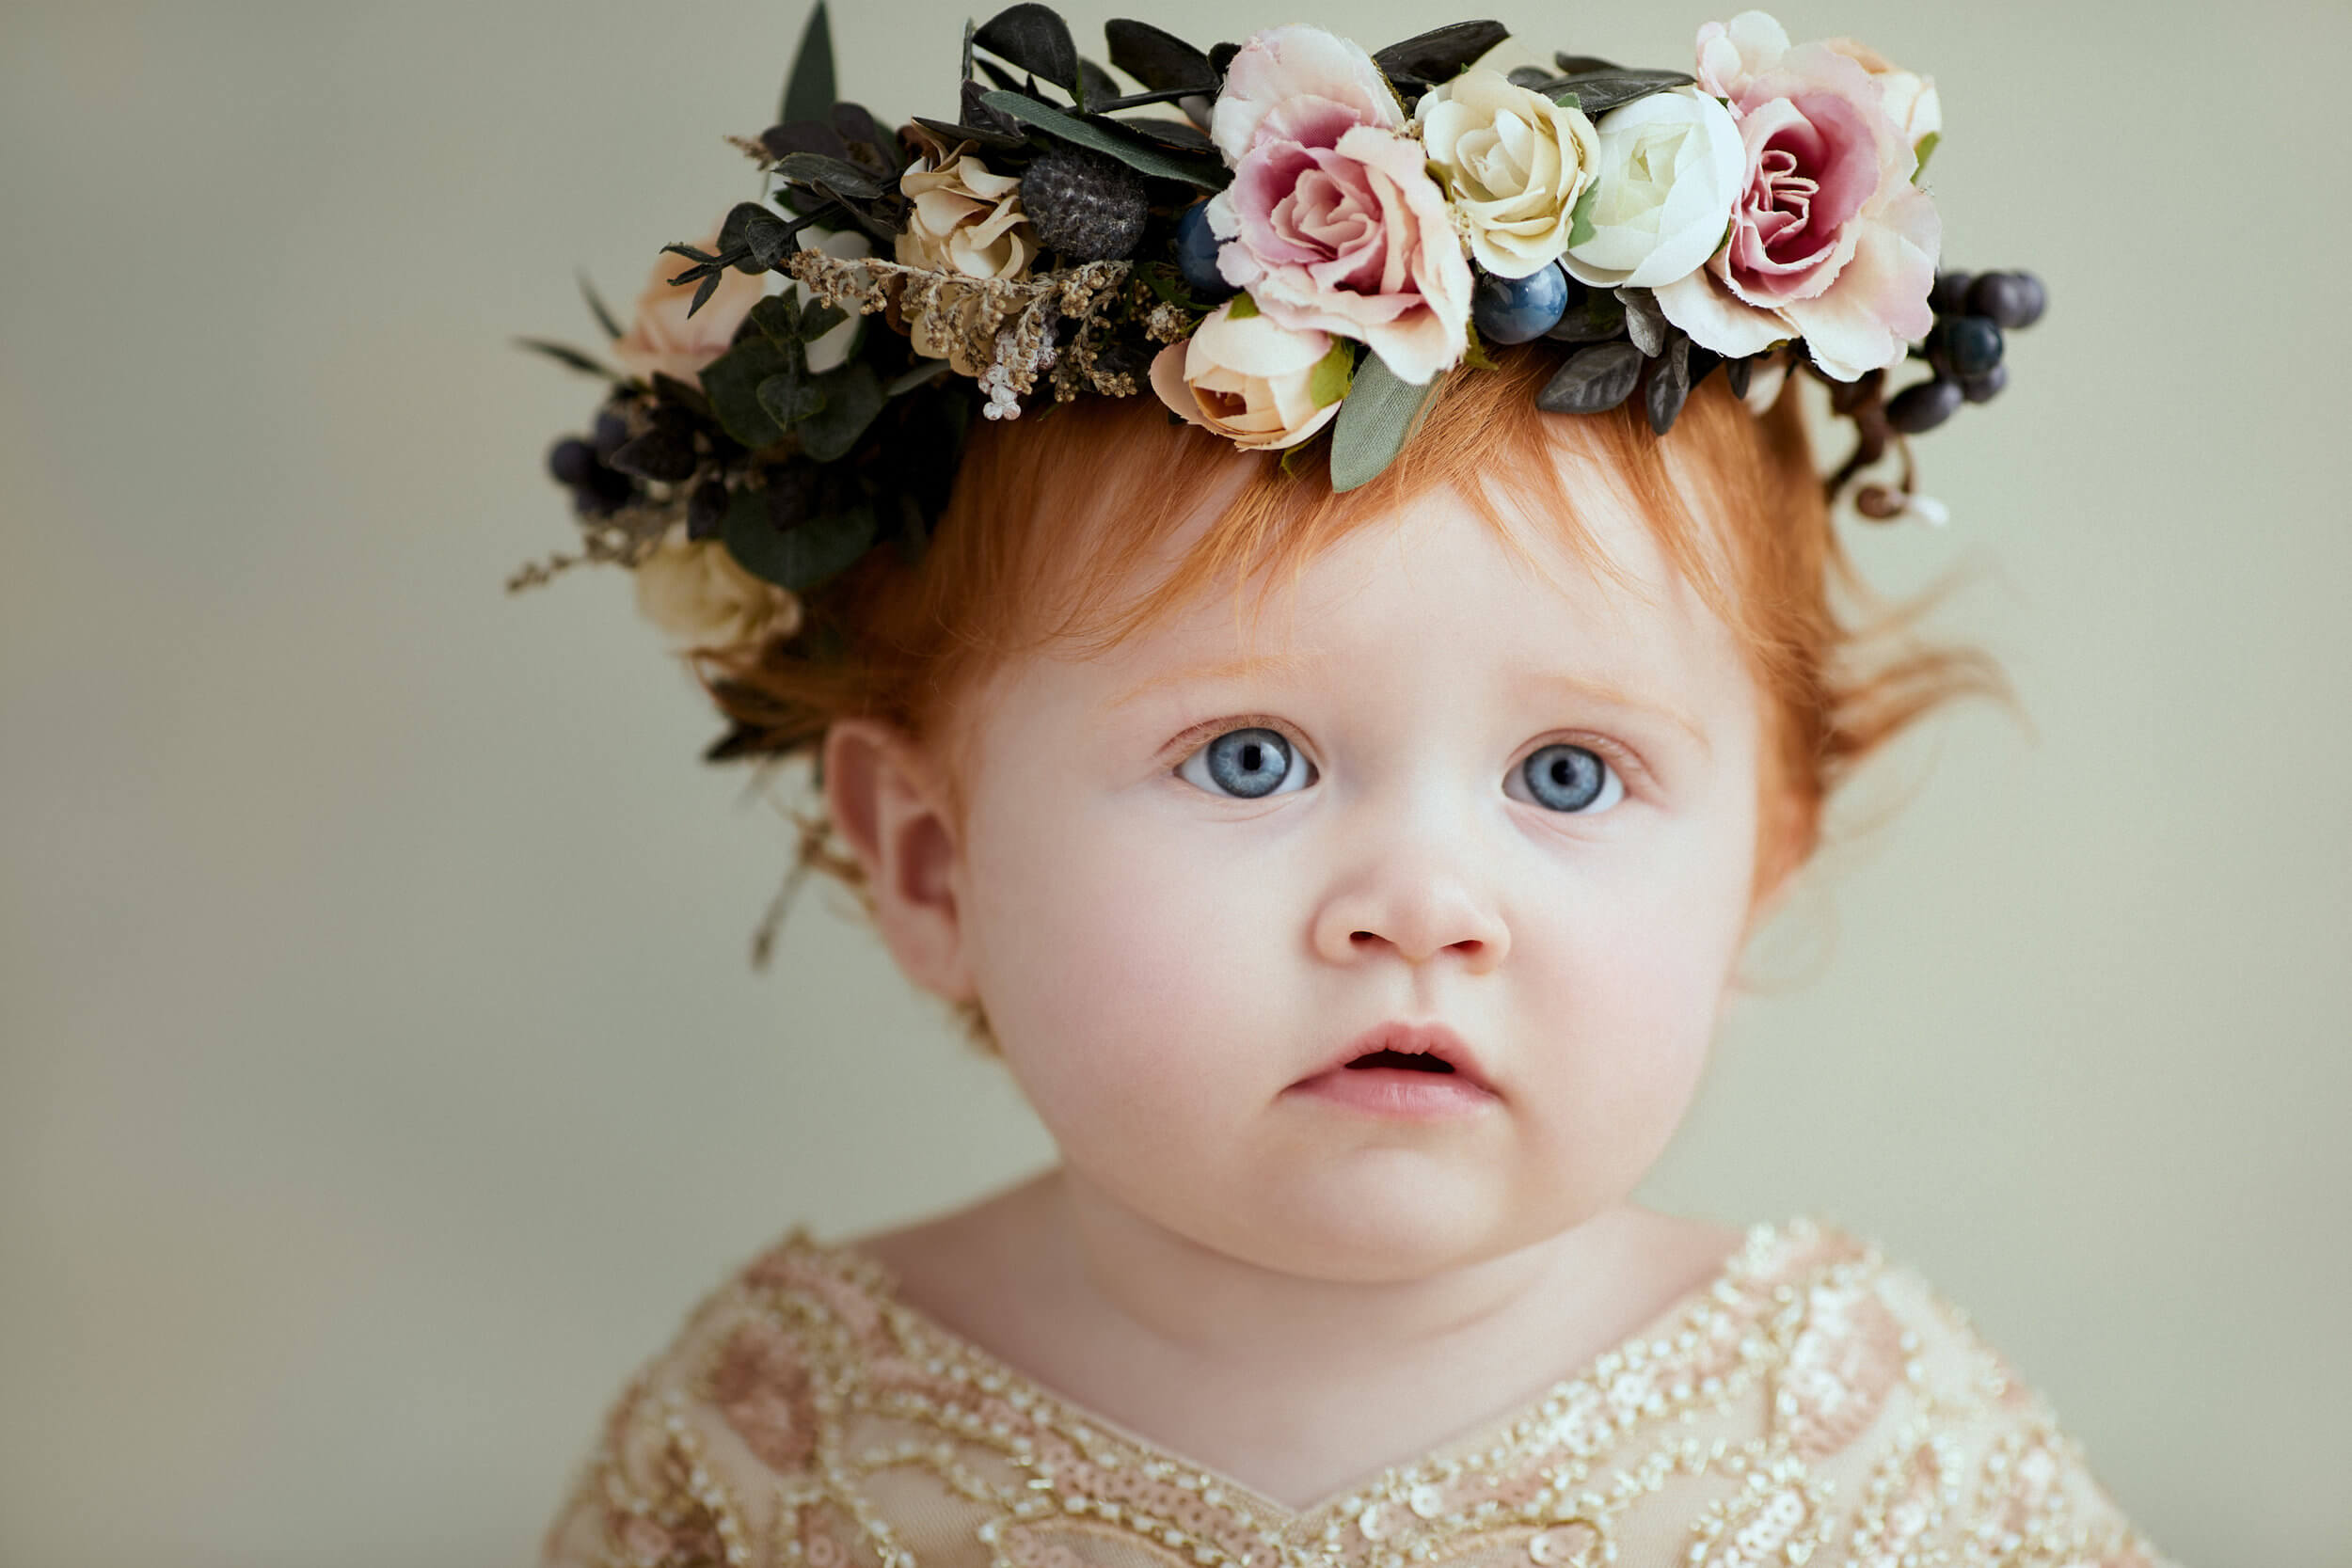 Thông thường những phụ kiện như nơ kẹp tóc, vương miện, vòng hoa,... là lựa chọn khi chụp ảnh theo kiểu công chúa nhỏ (Ảnh sưu tầm)